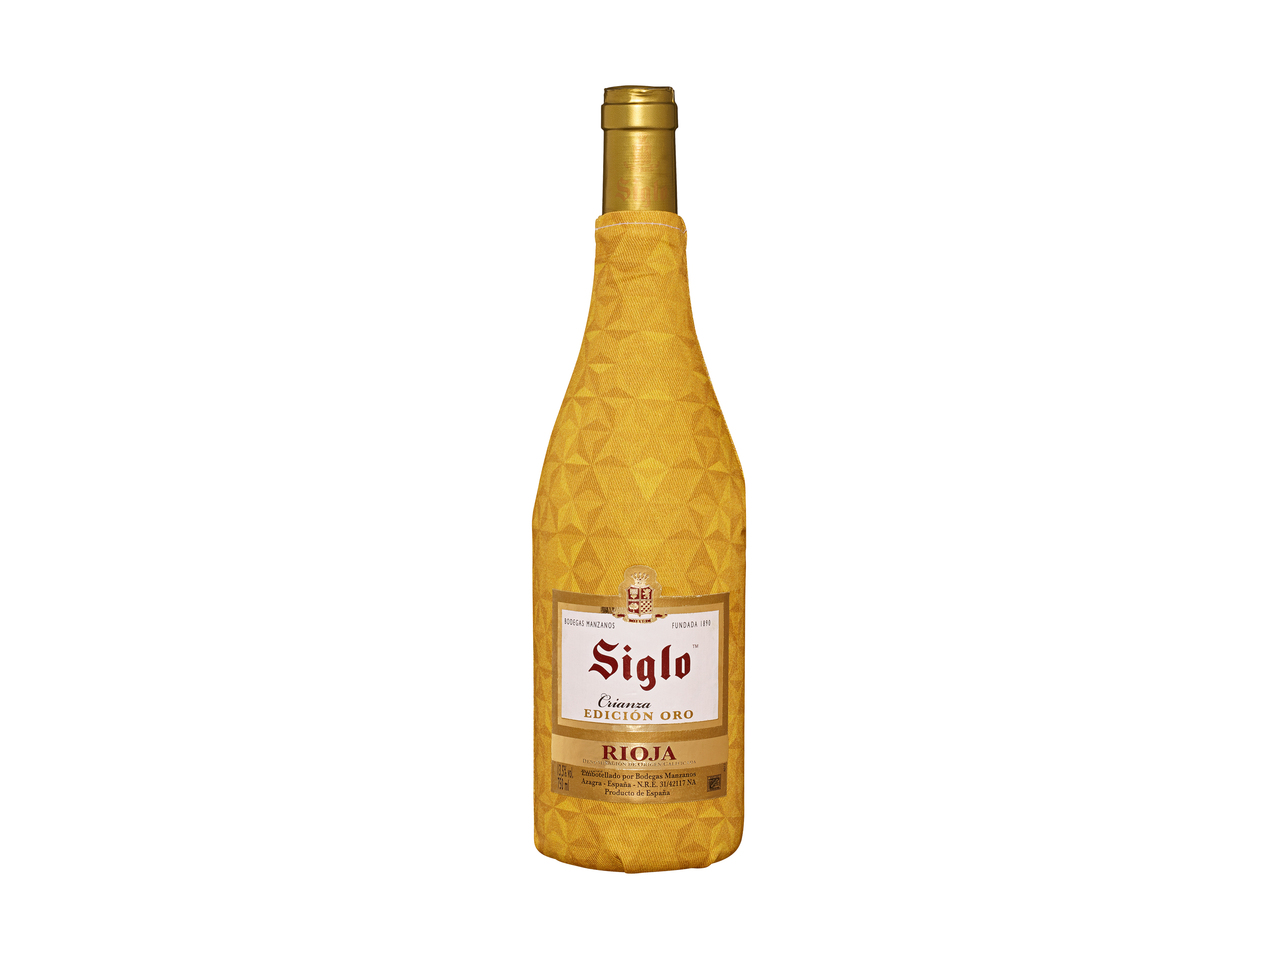 Siglo Rioja Edición Oro, 2015 DOCa